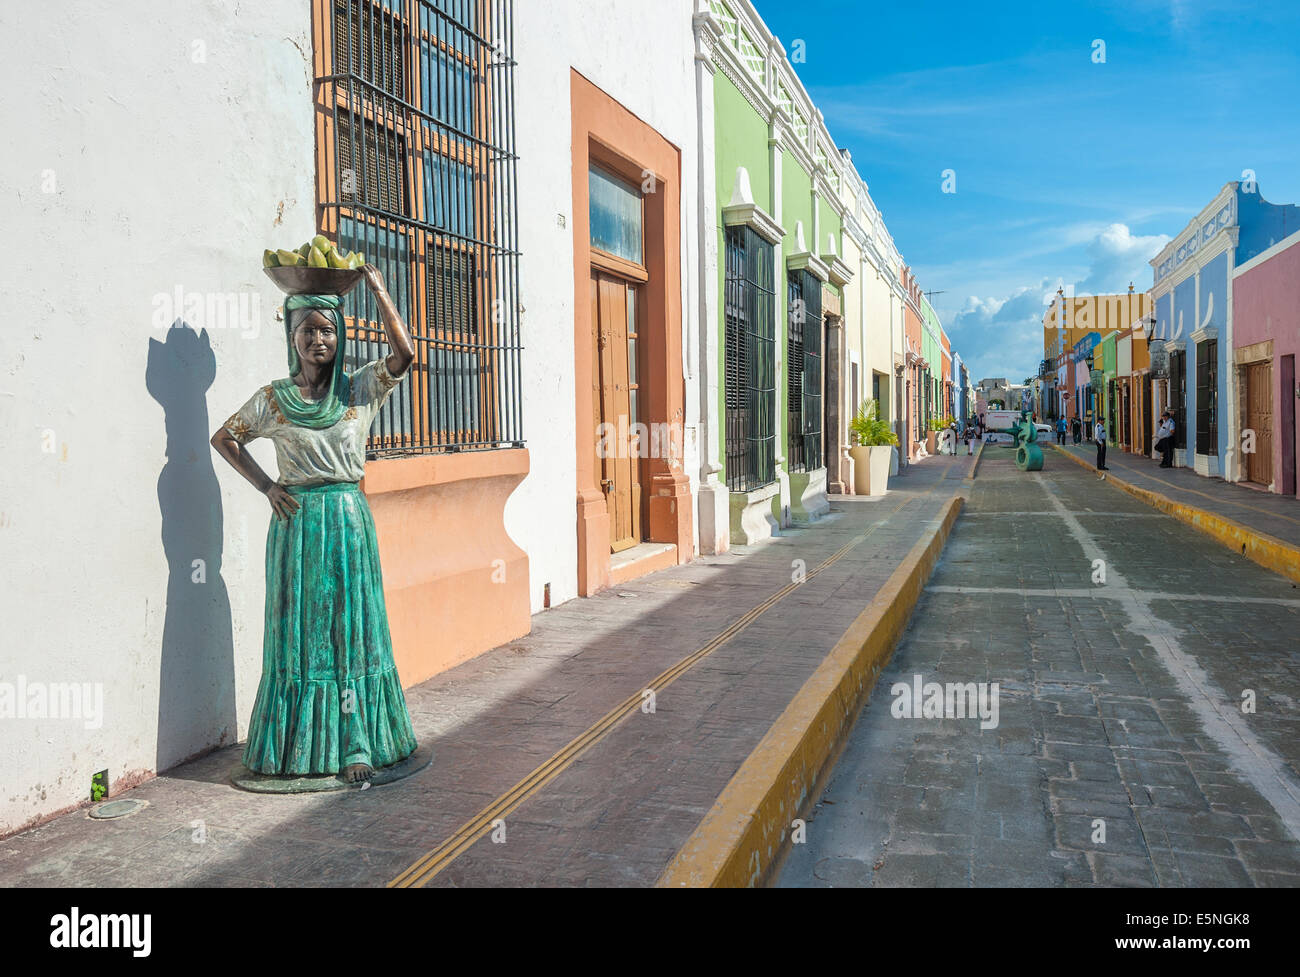 Rues de la ville coloniale de Campeche, Mexique Banque D'Images